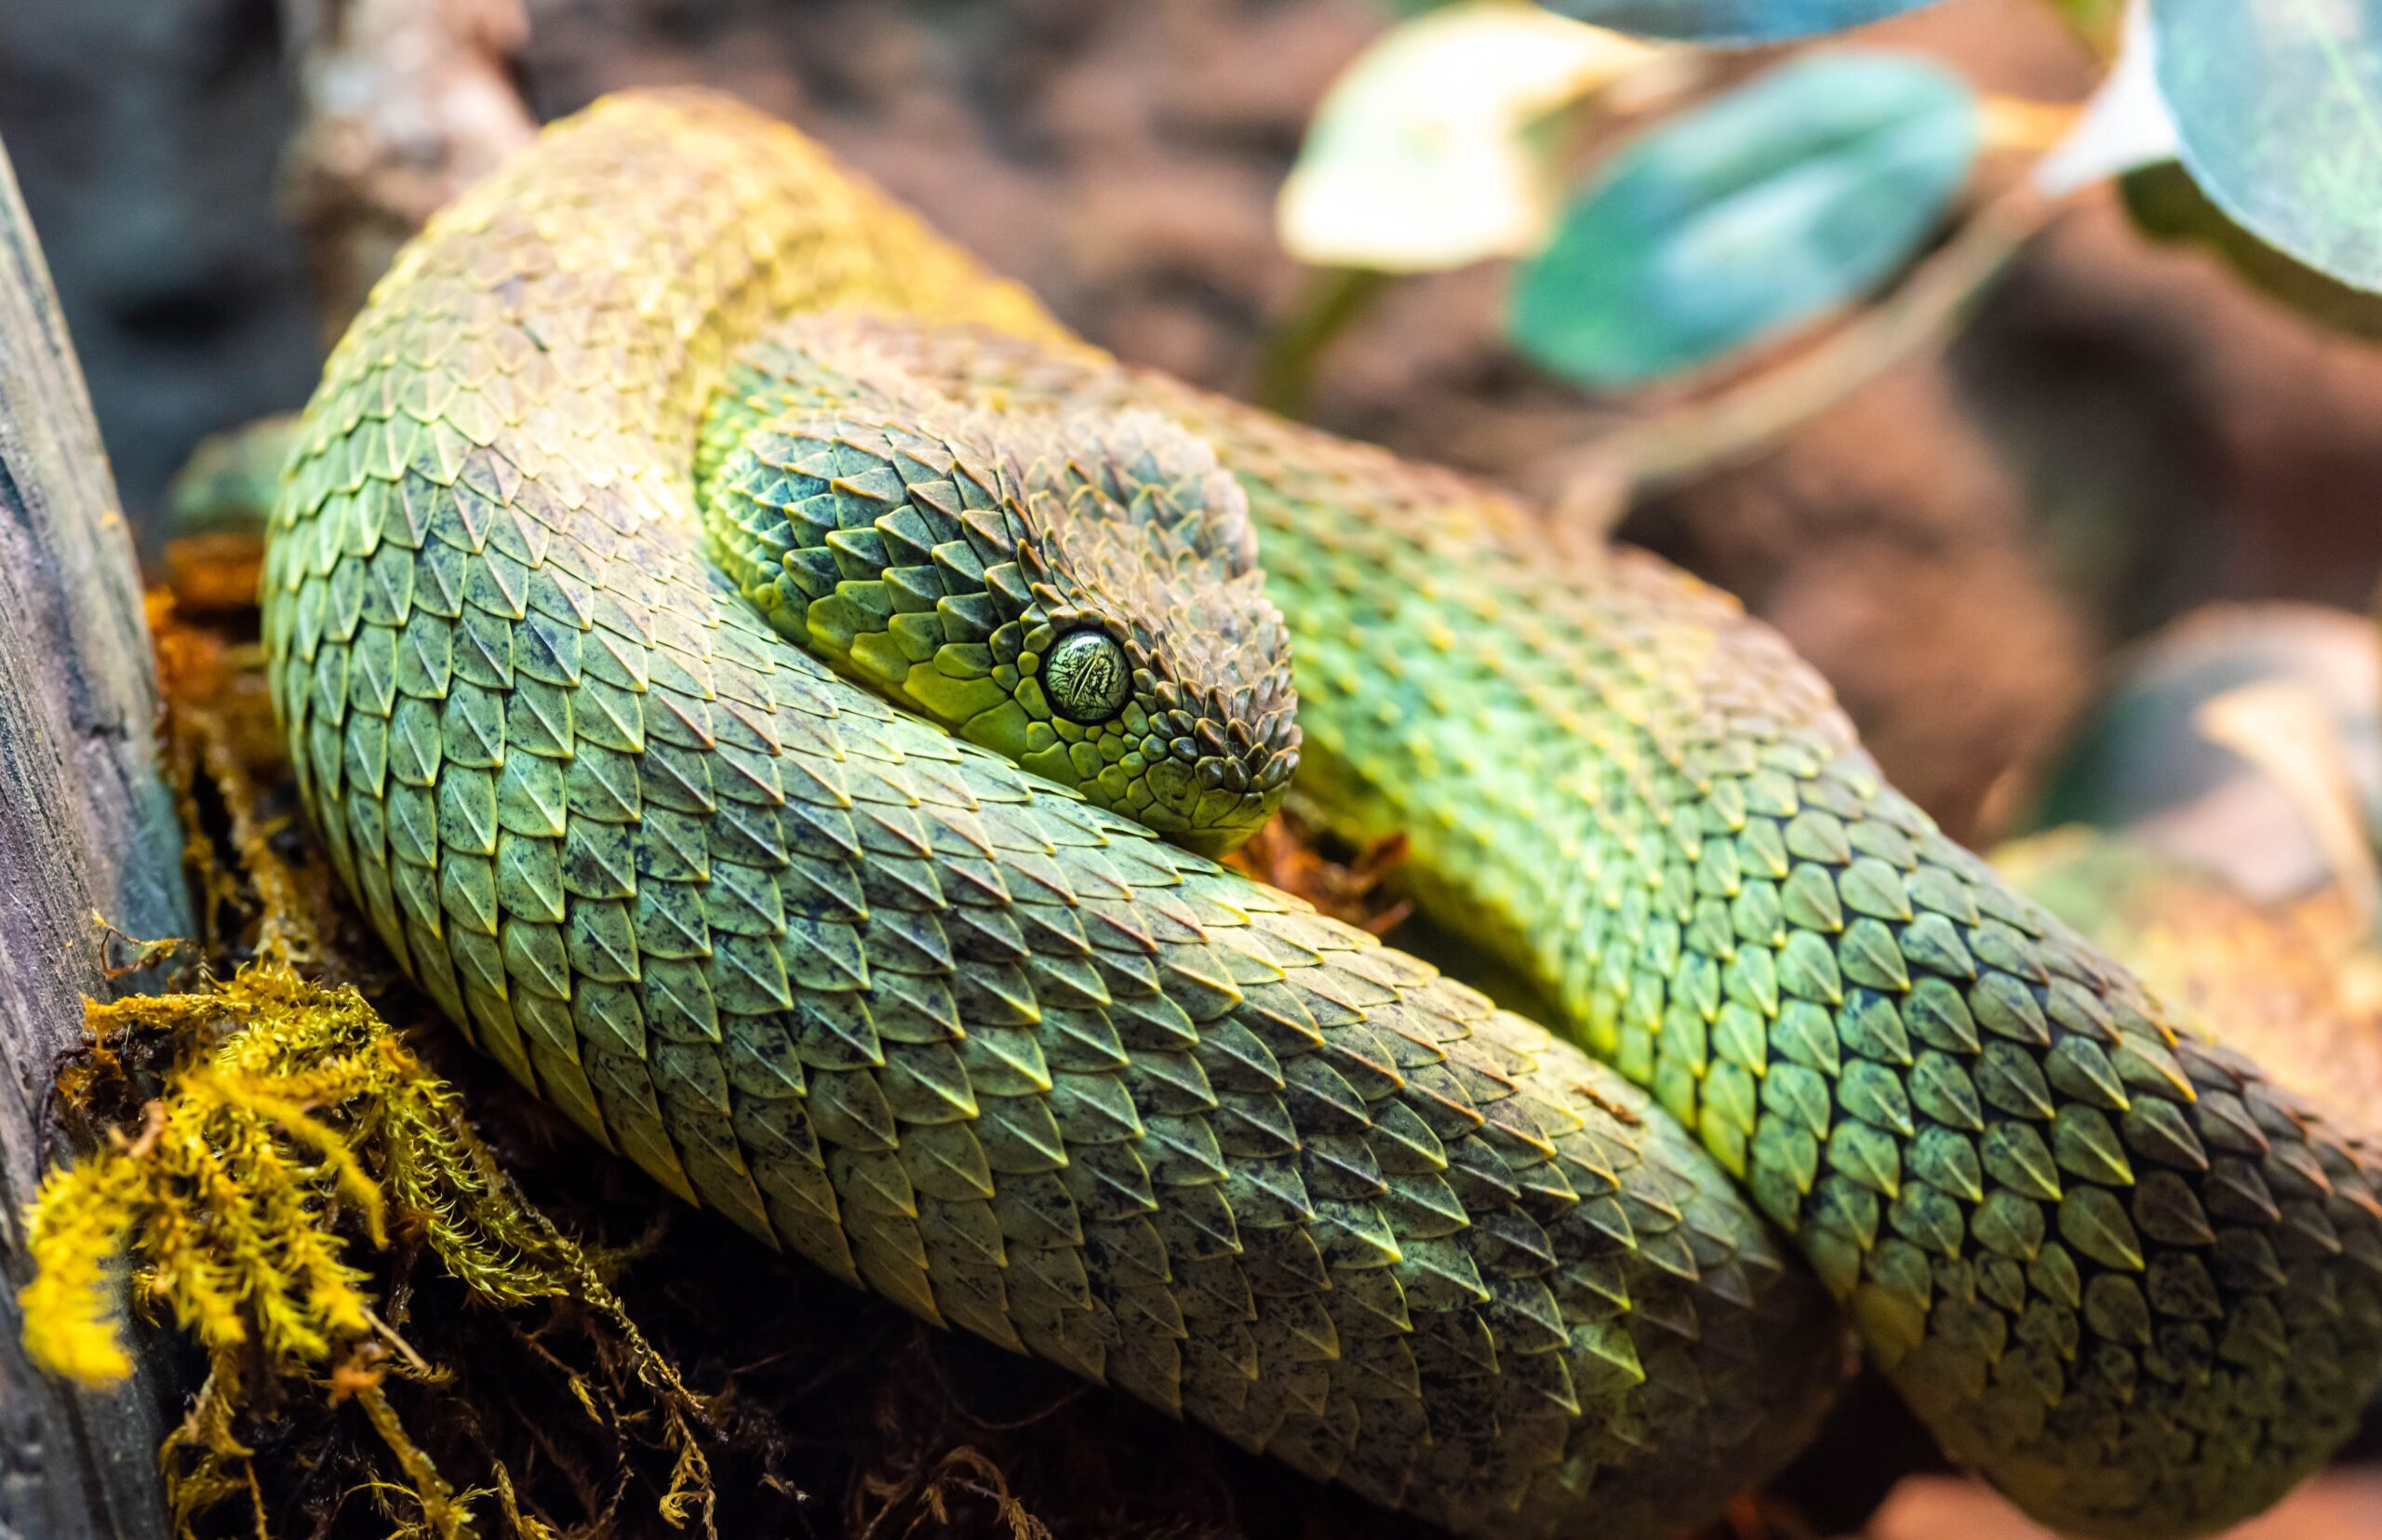 green viper